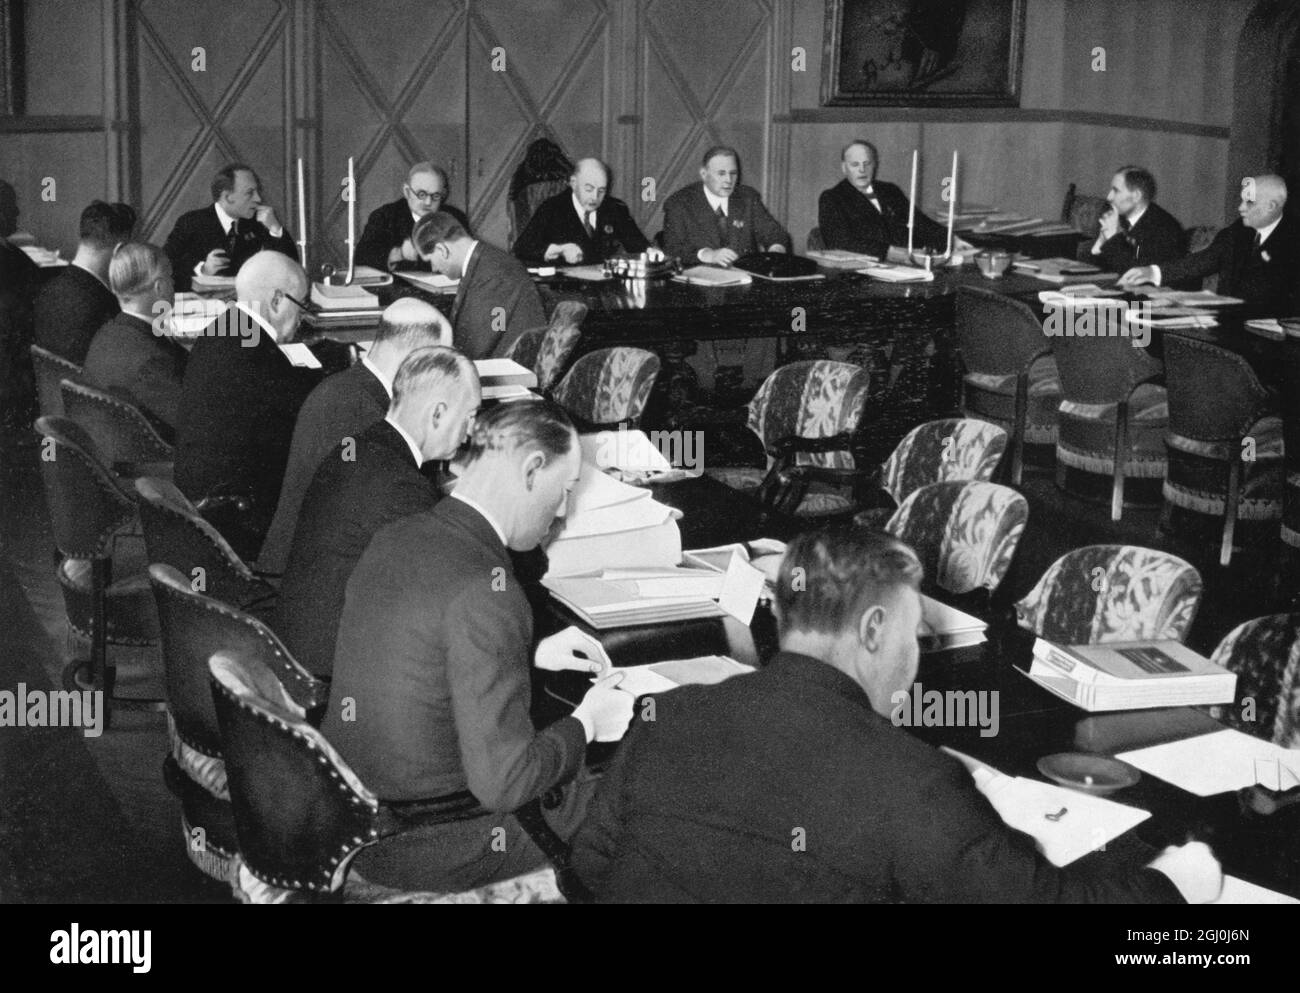 Comitato Olimpico Internazionale (I.O.C.) roccaforte durante una riunione ad Oslo 1935 - stesura di un rapporto sui preparativi olimpici. ©TopFoto Foto Stock